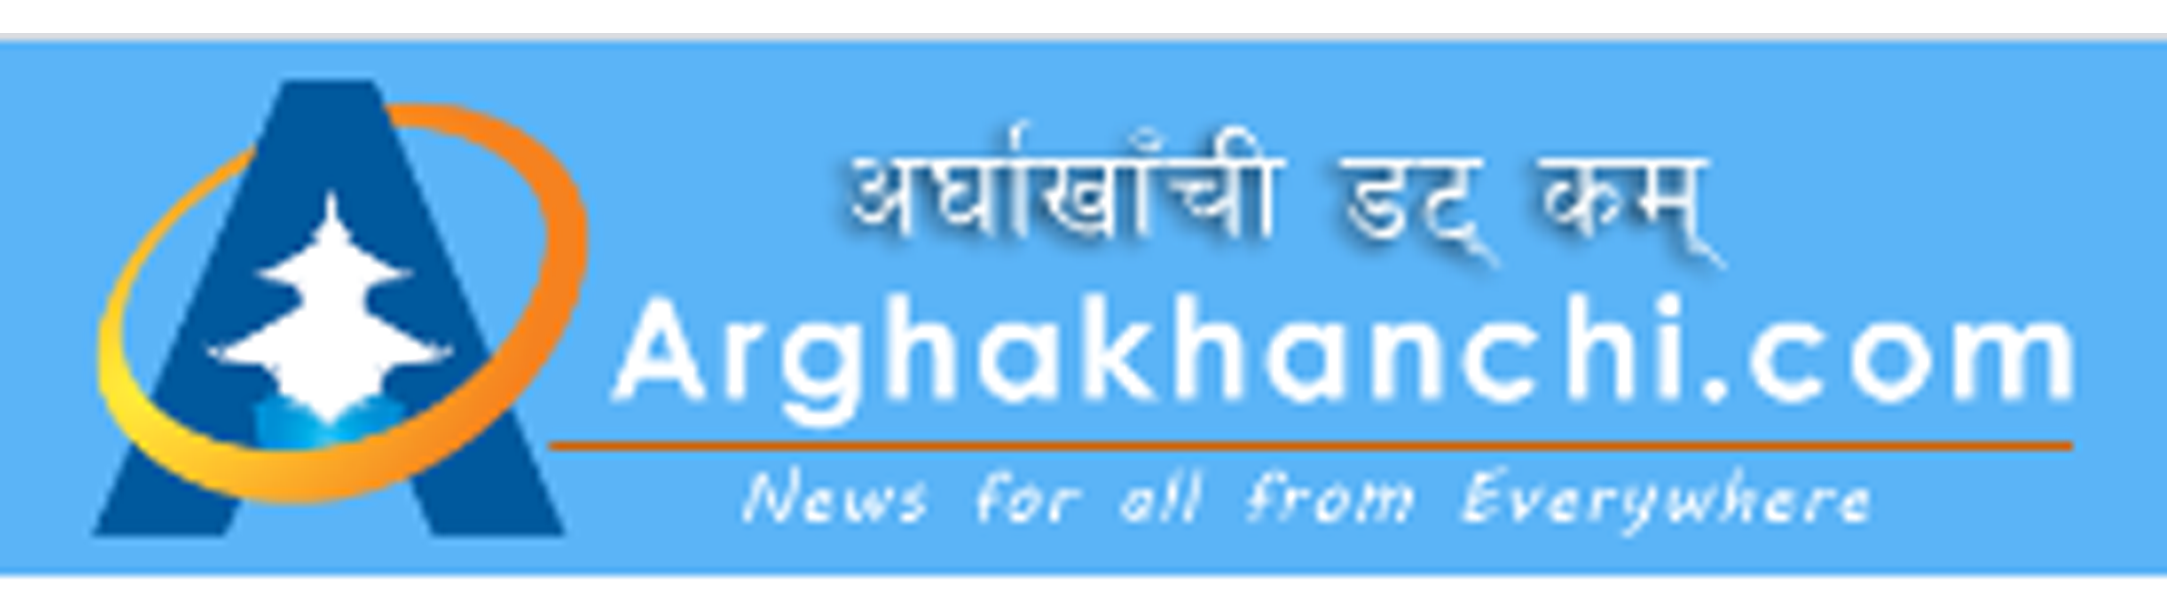 Arghakhanchi.com अर्घाखाँसी डट कम